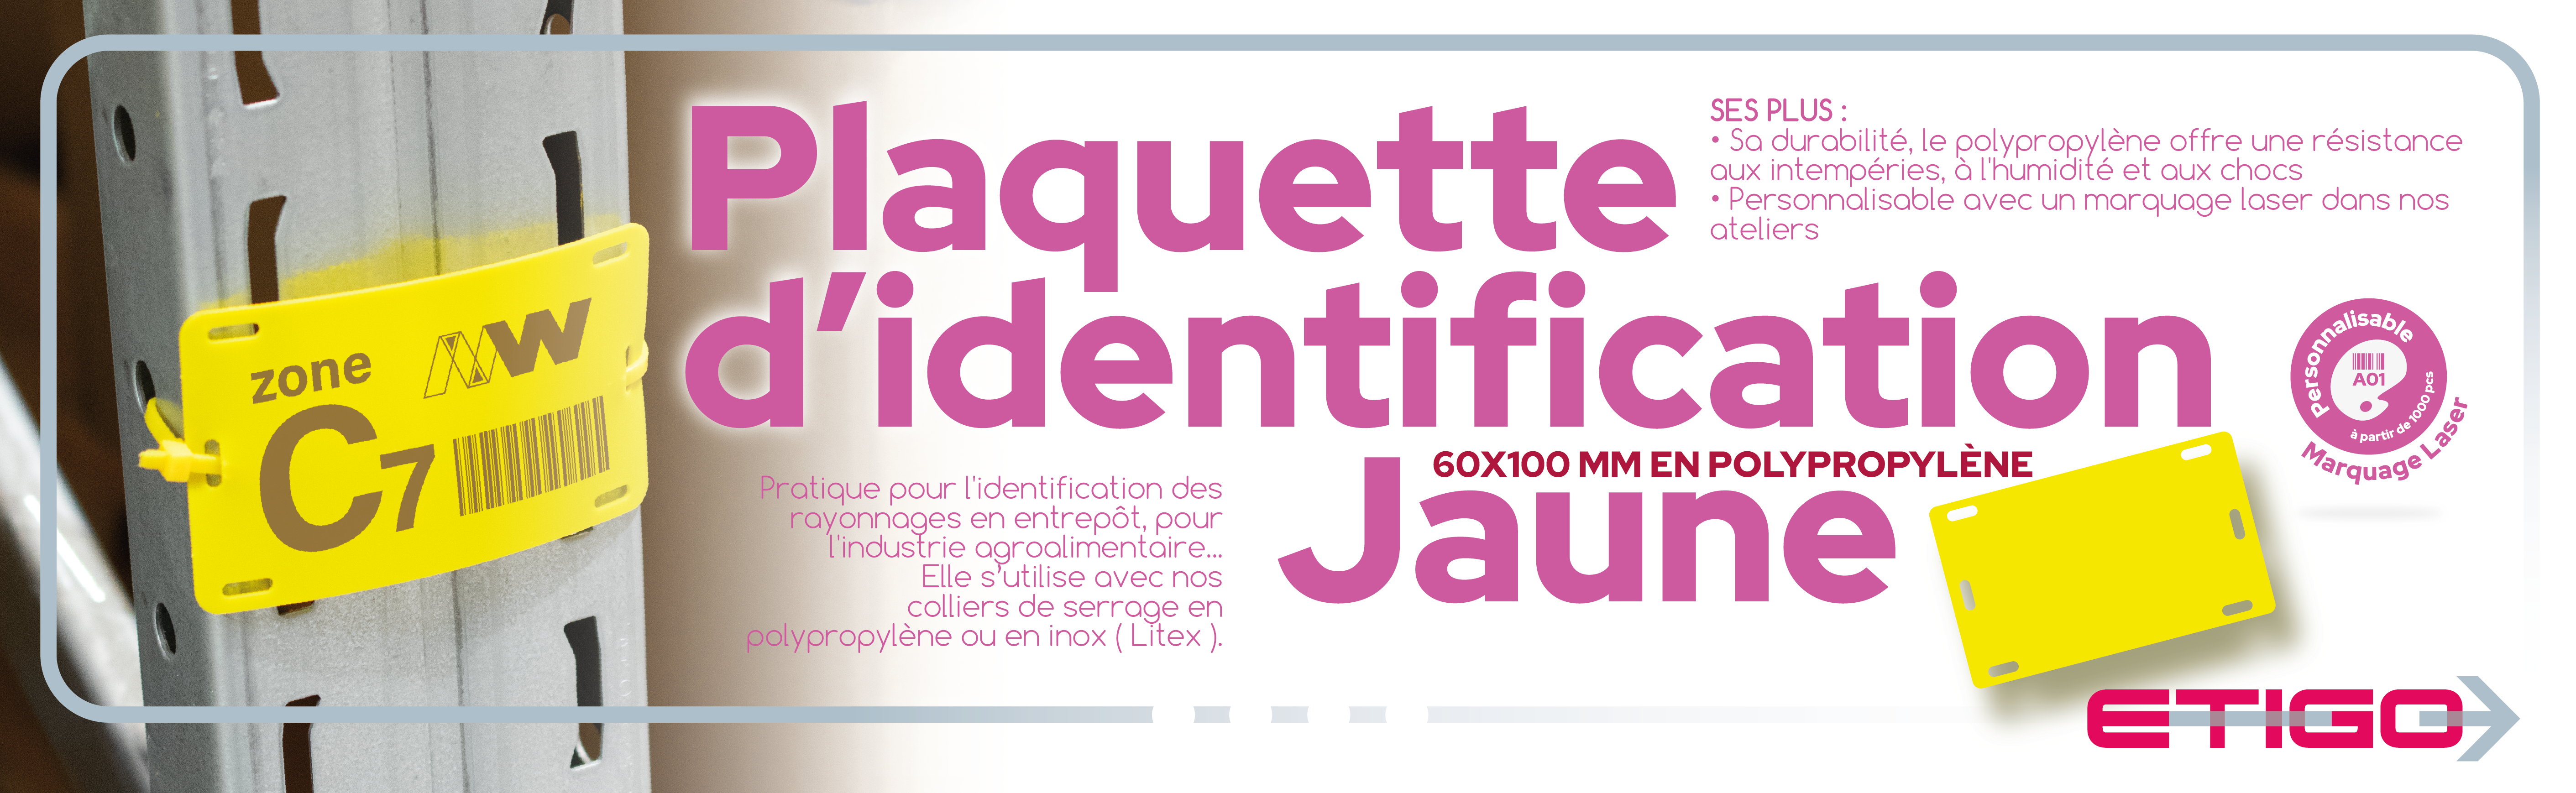 Plaquette identification